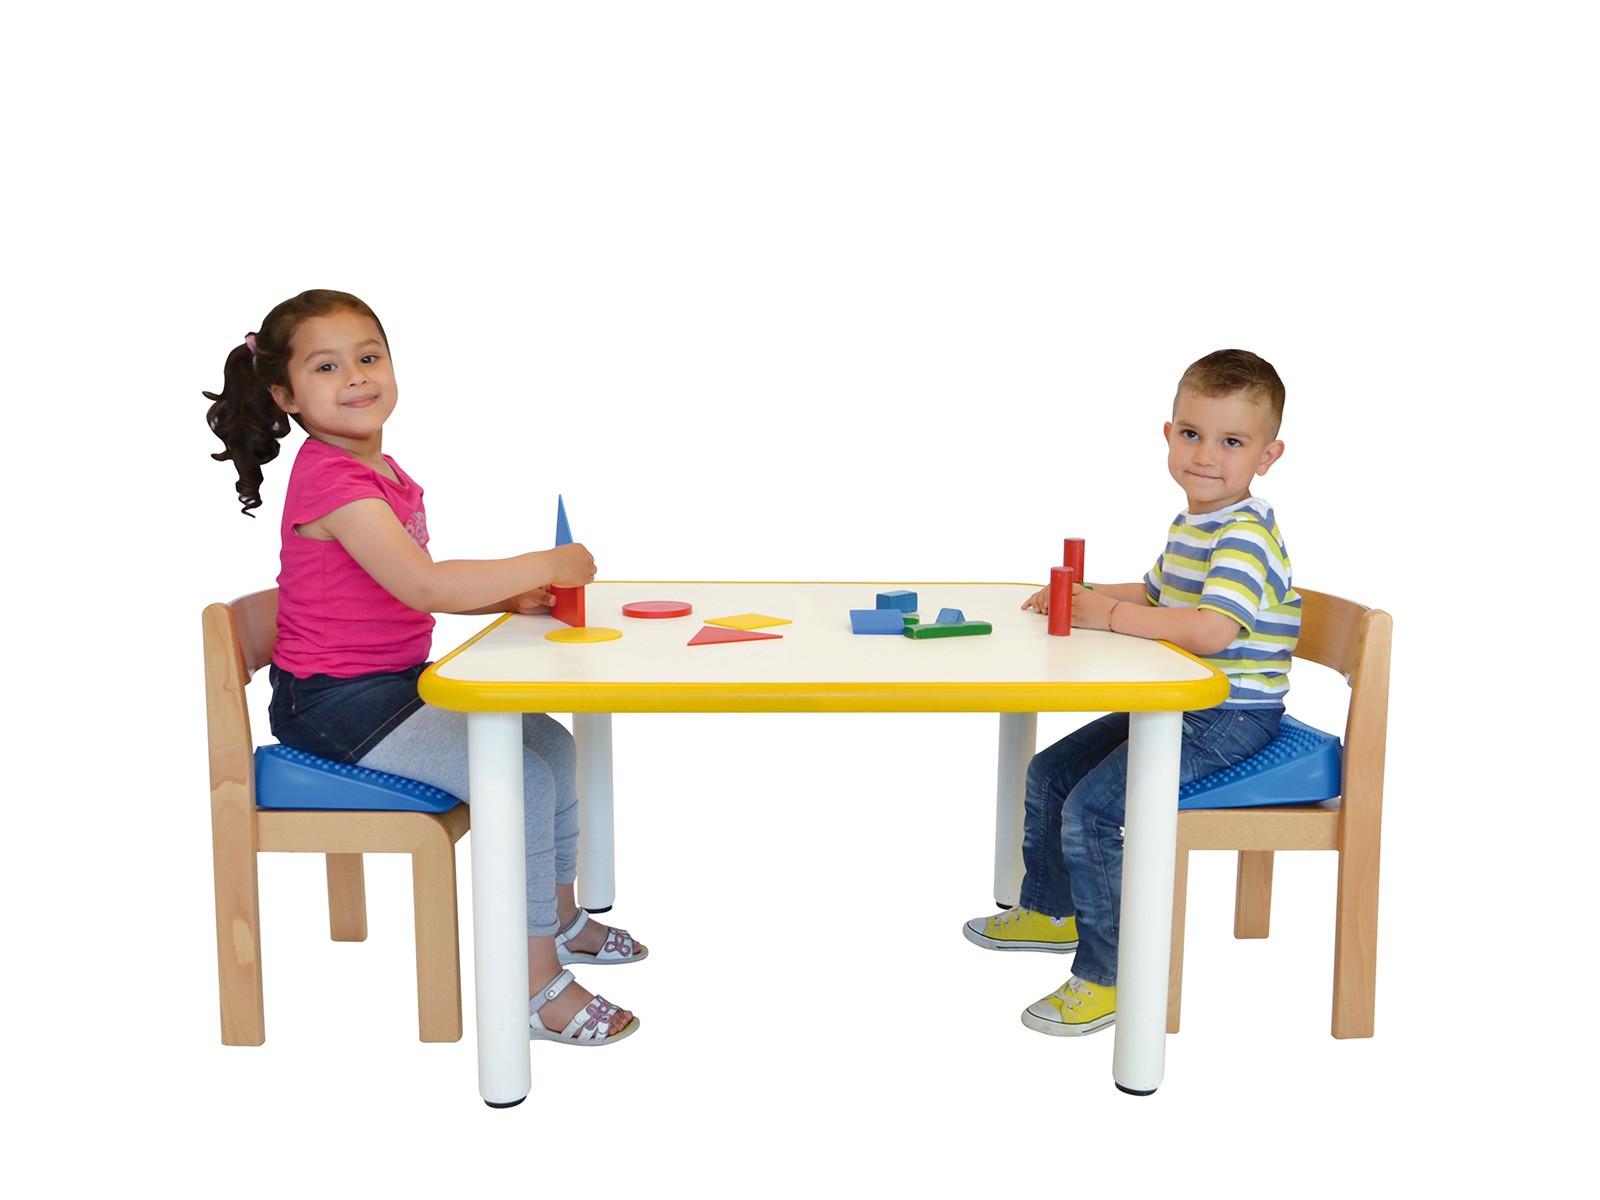 Movin’ Sit Junior - Podkładka korekcyjna dla dzieci do siedzenia